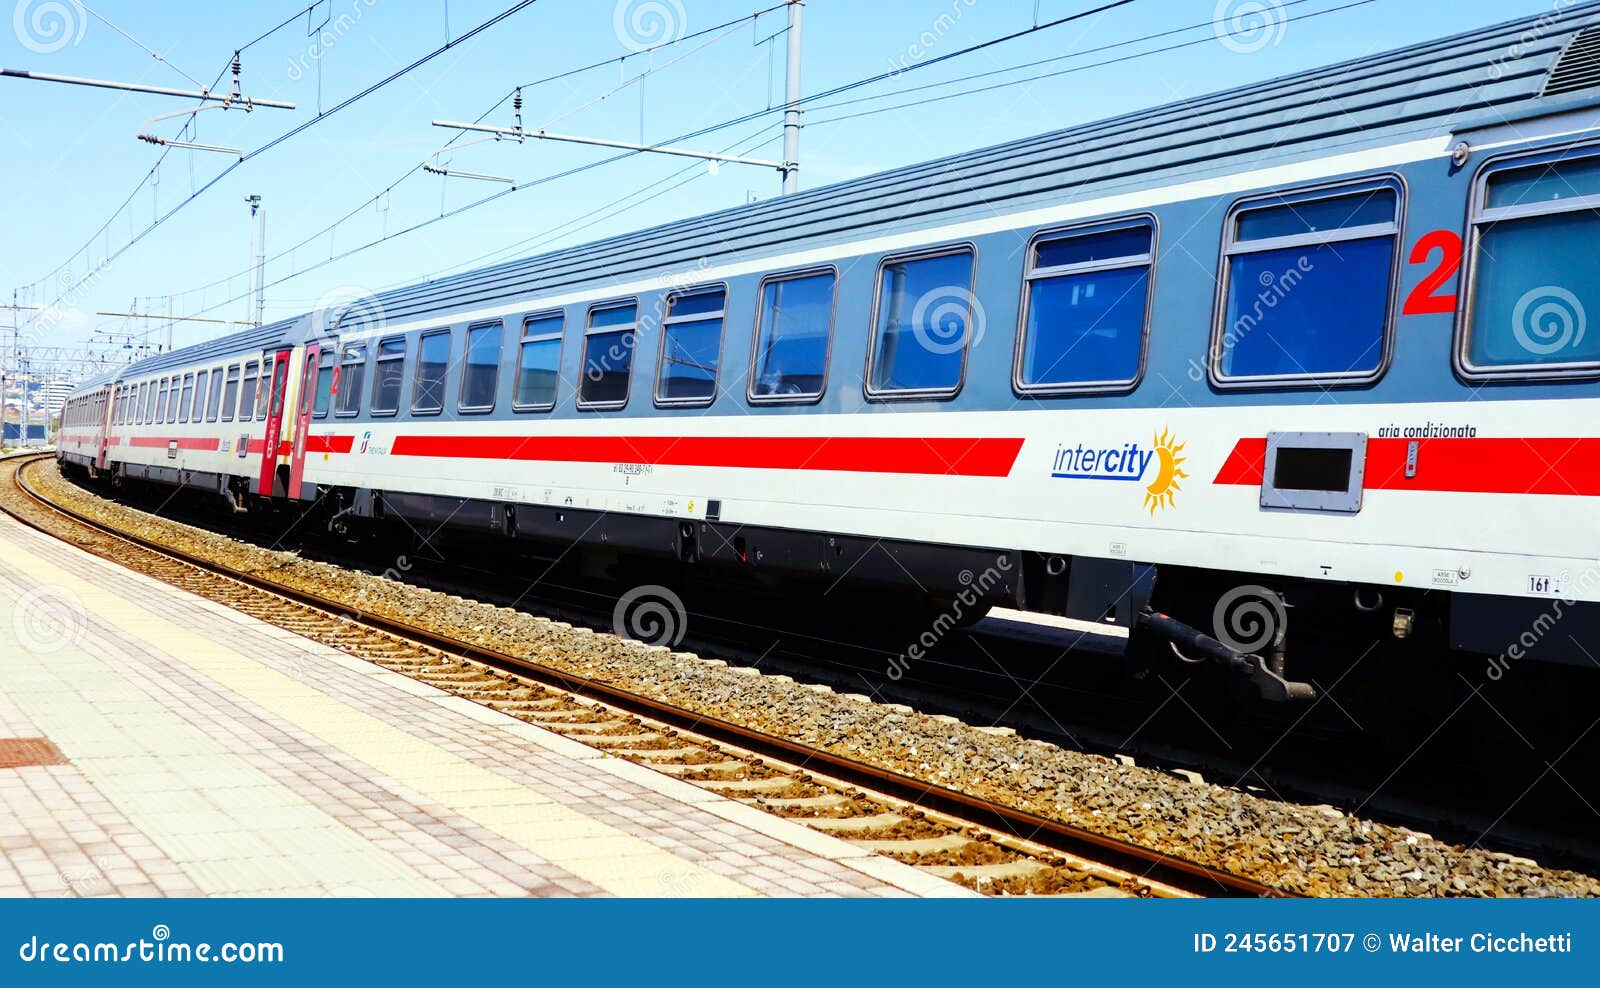 intercity-italian-train-trenitalia-italy